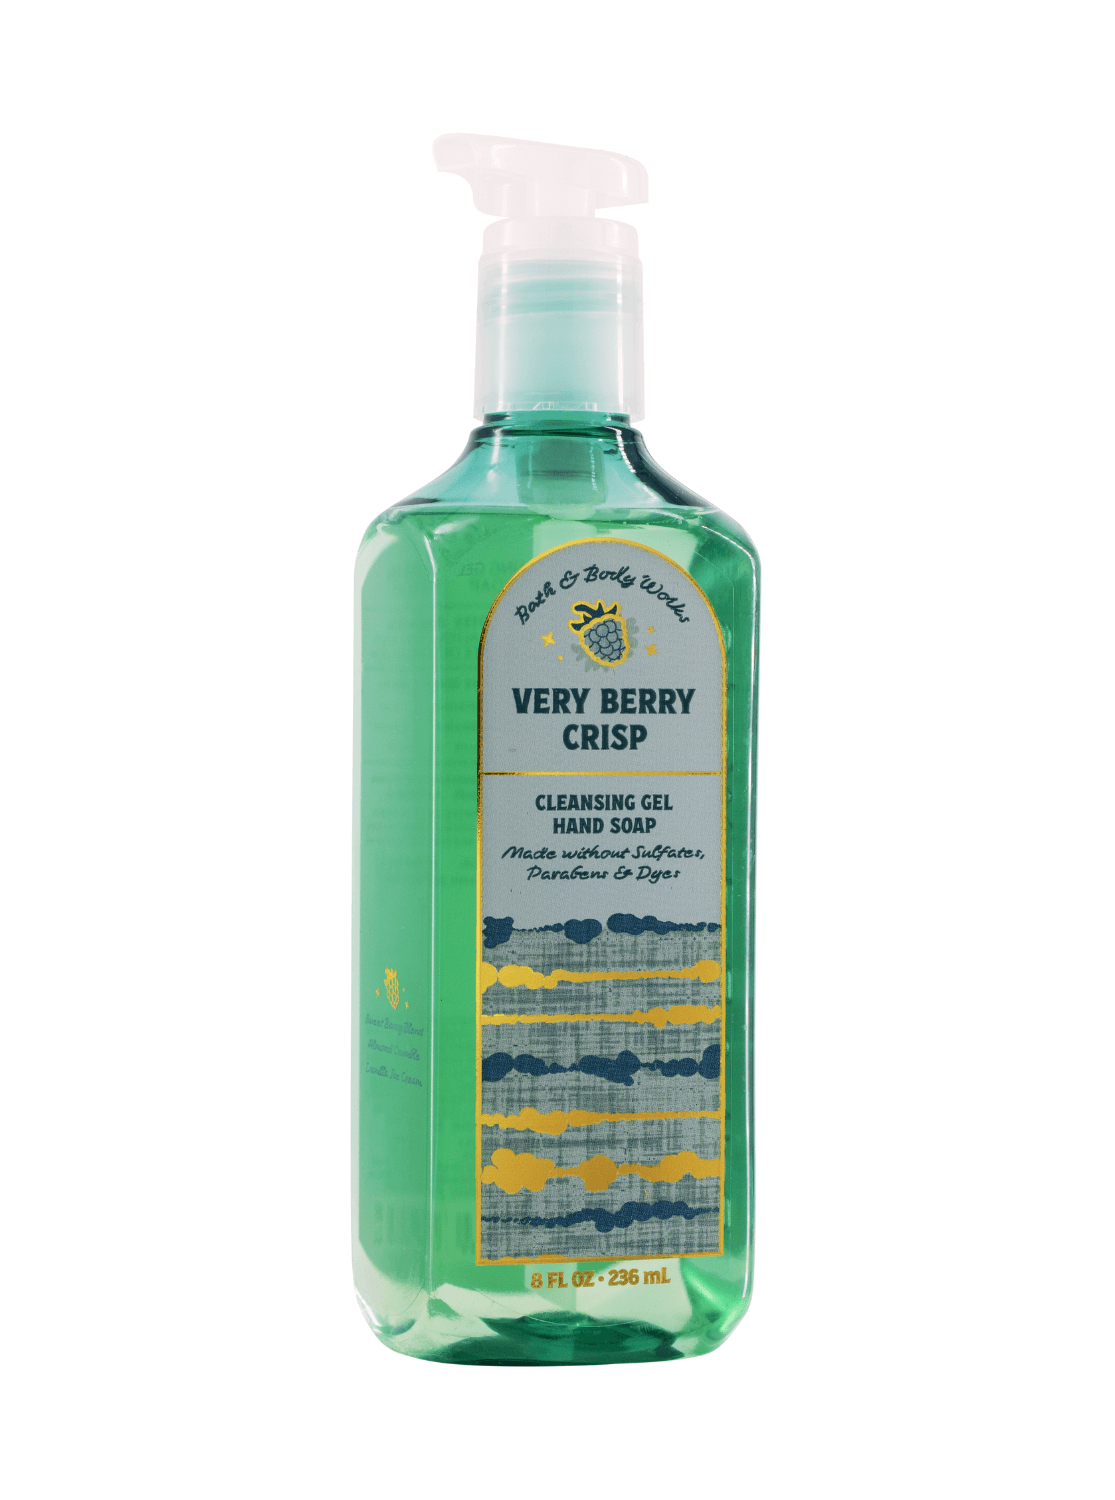 Gel soap - very berry crisp - 236ml